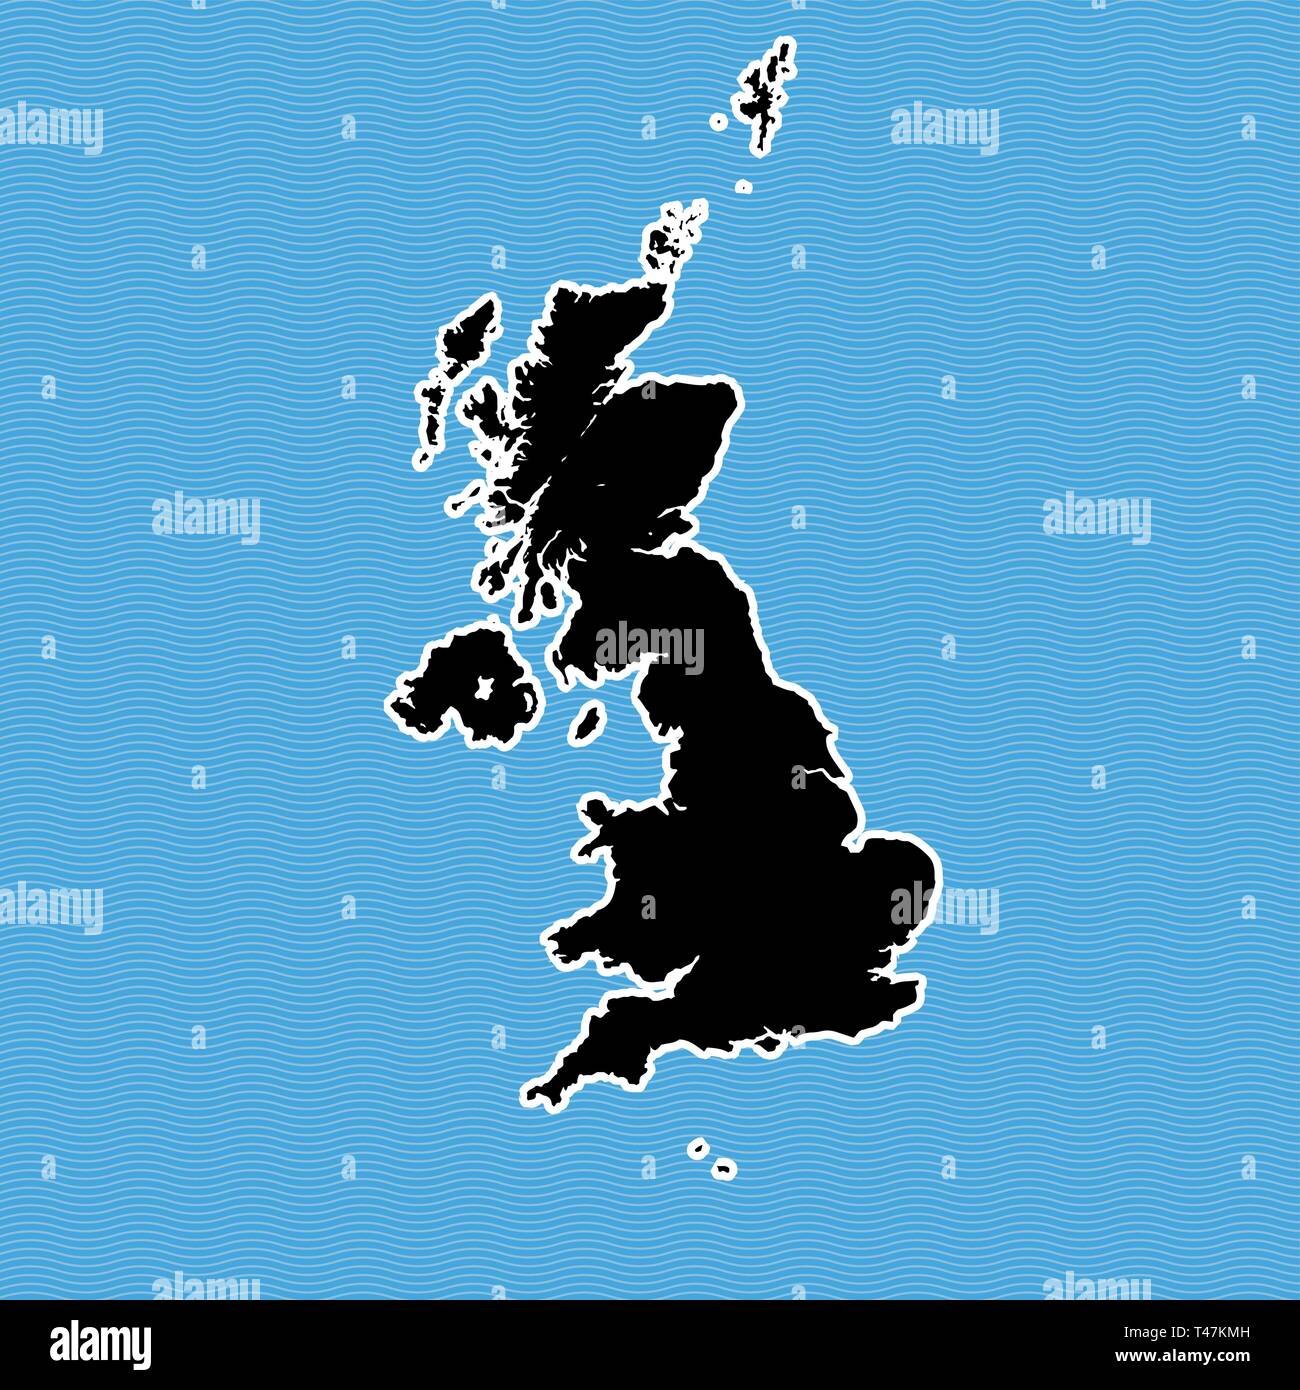 Royaume-uni carte en île. Site séparés sur fond de l'eau vague bleue. Illustration de Vecteur